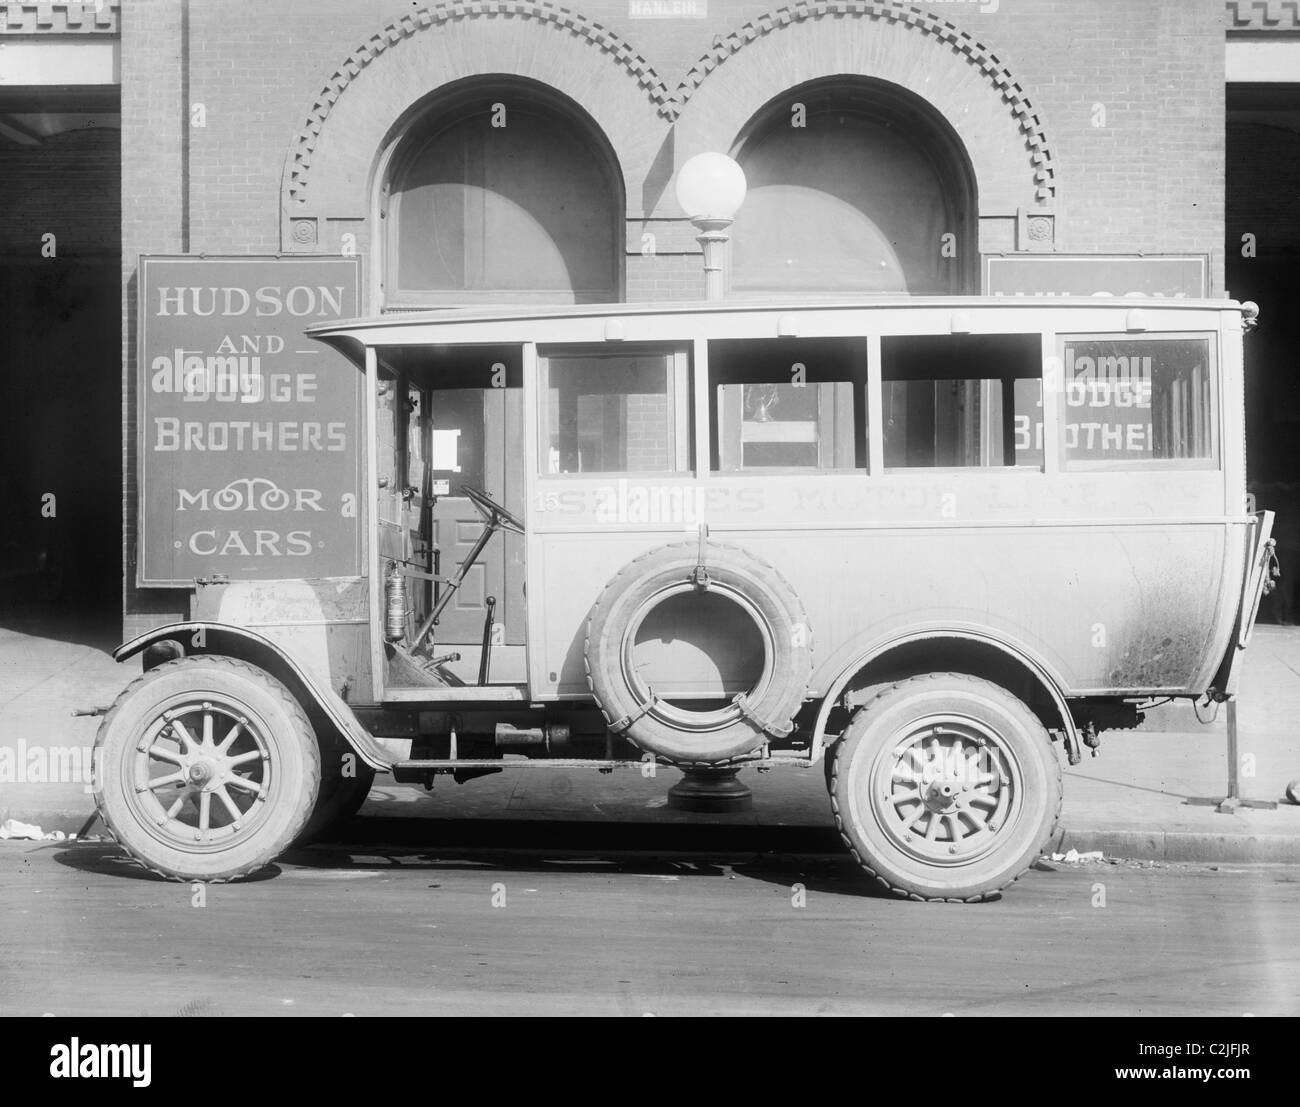 Dodge Brothers et Hudson, automobiles, la conduite du moteur Semmes Banque D'Images